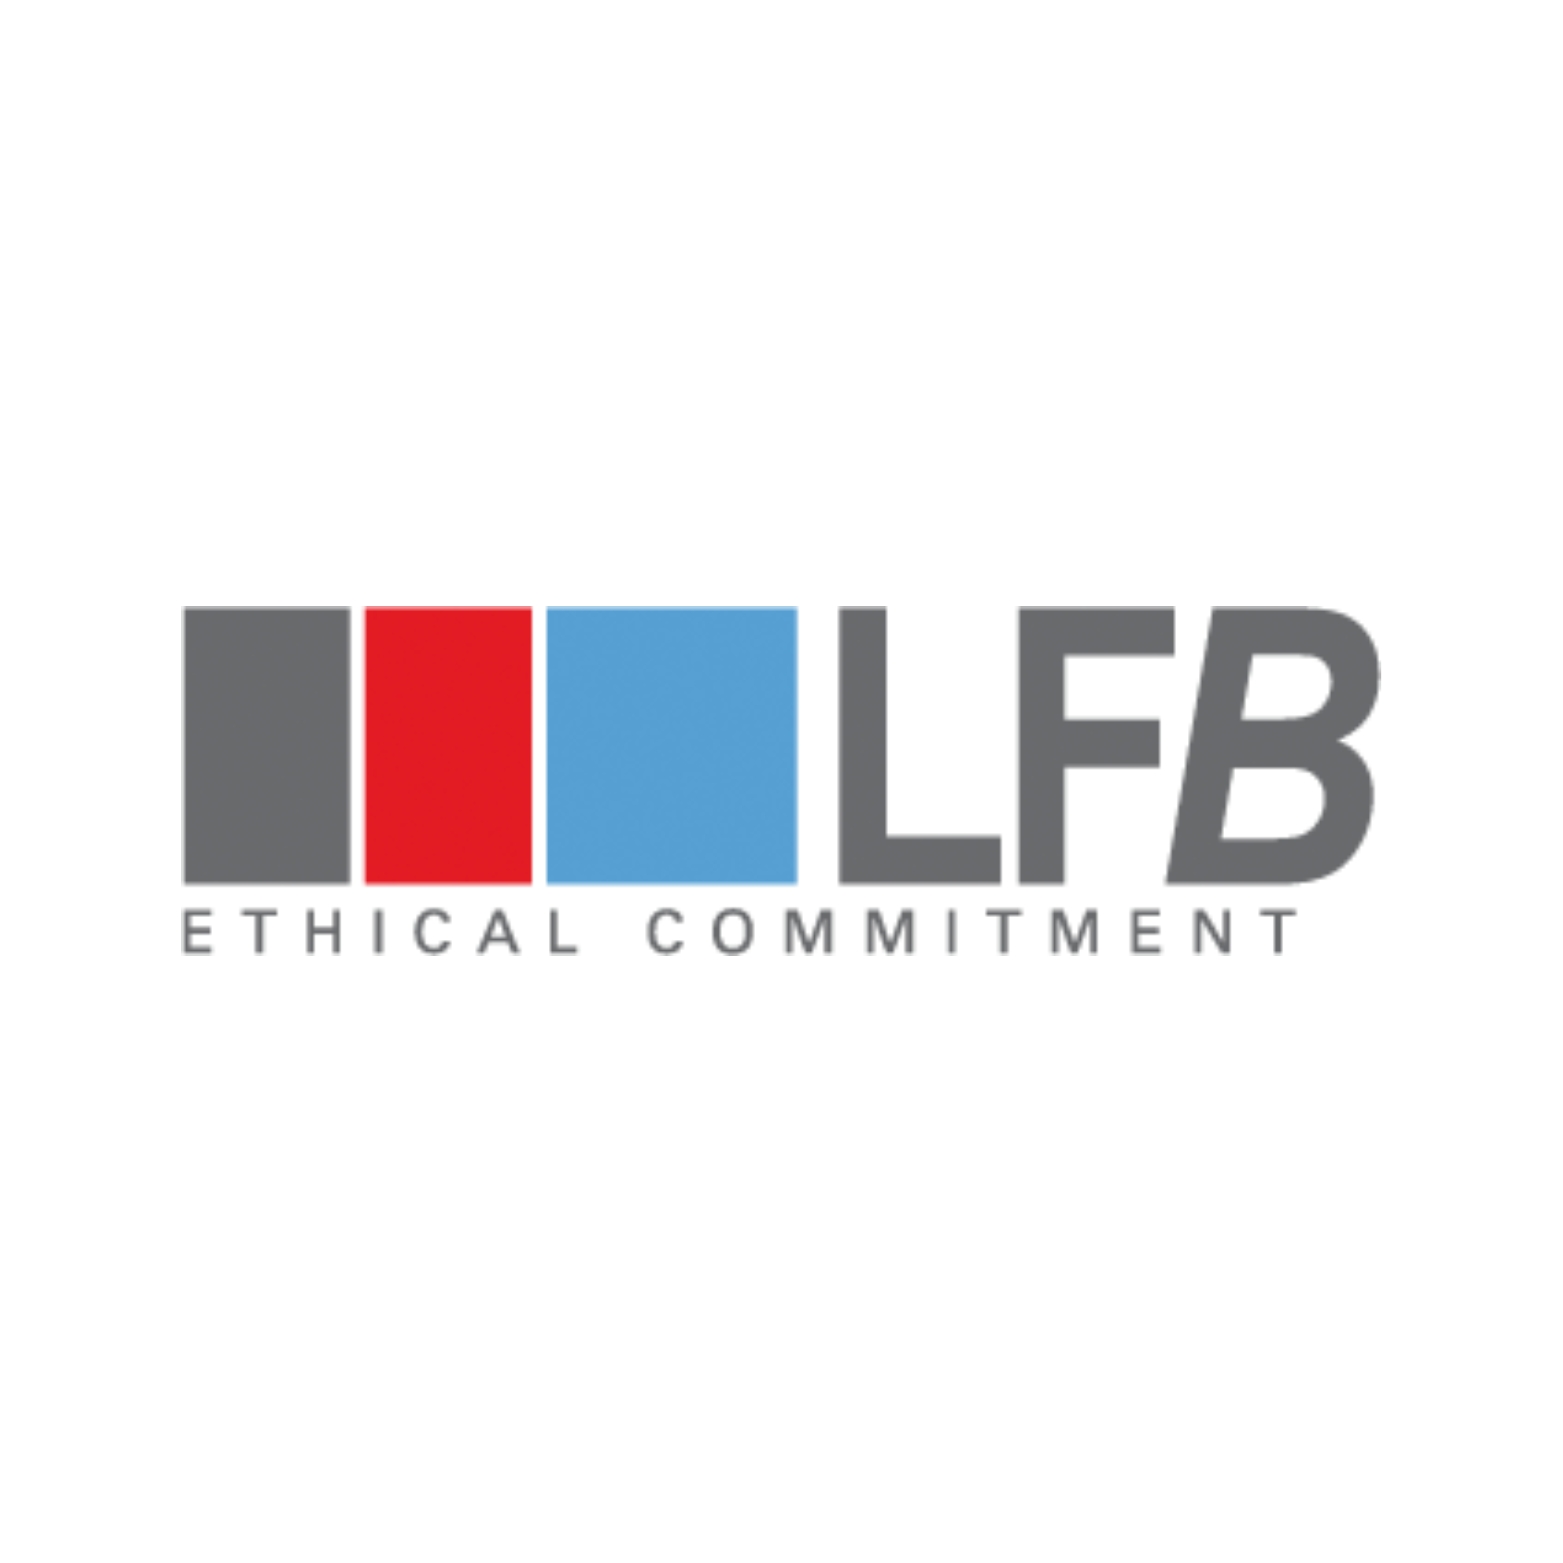 logo lfb